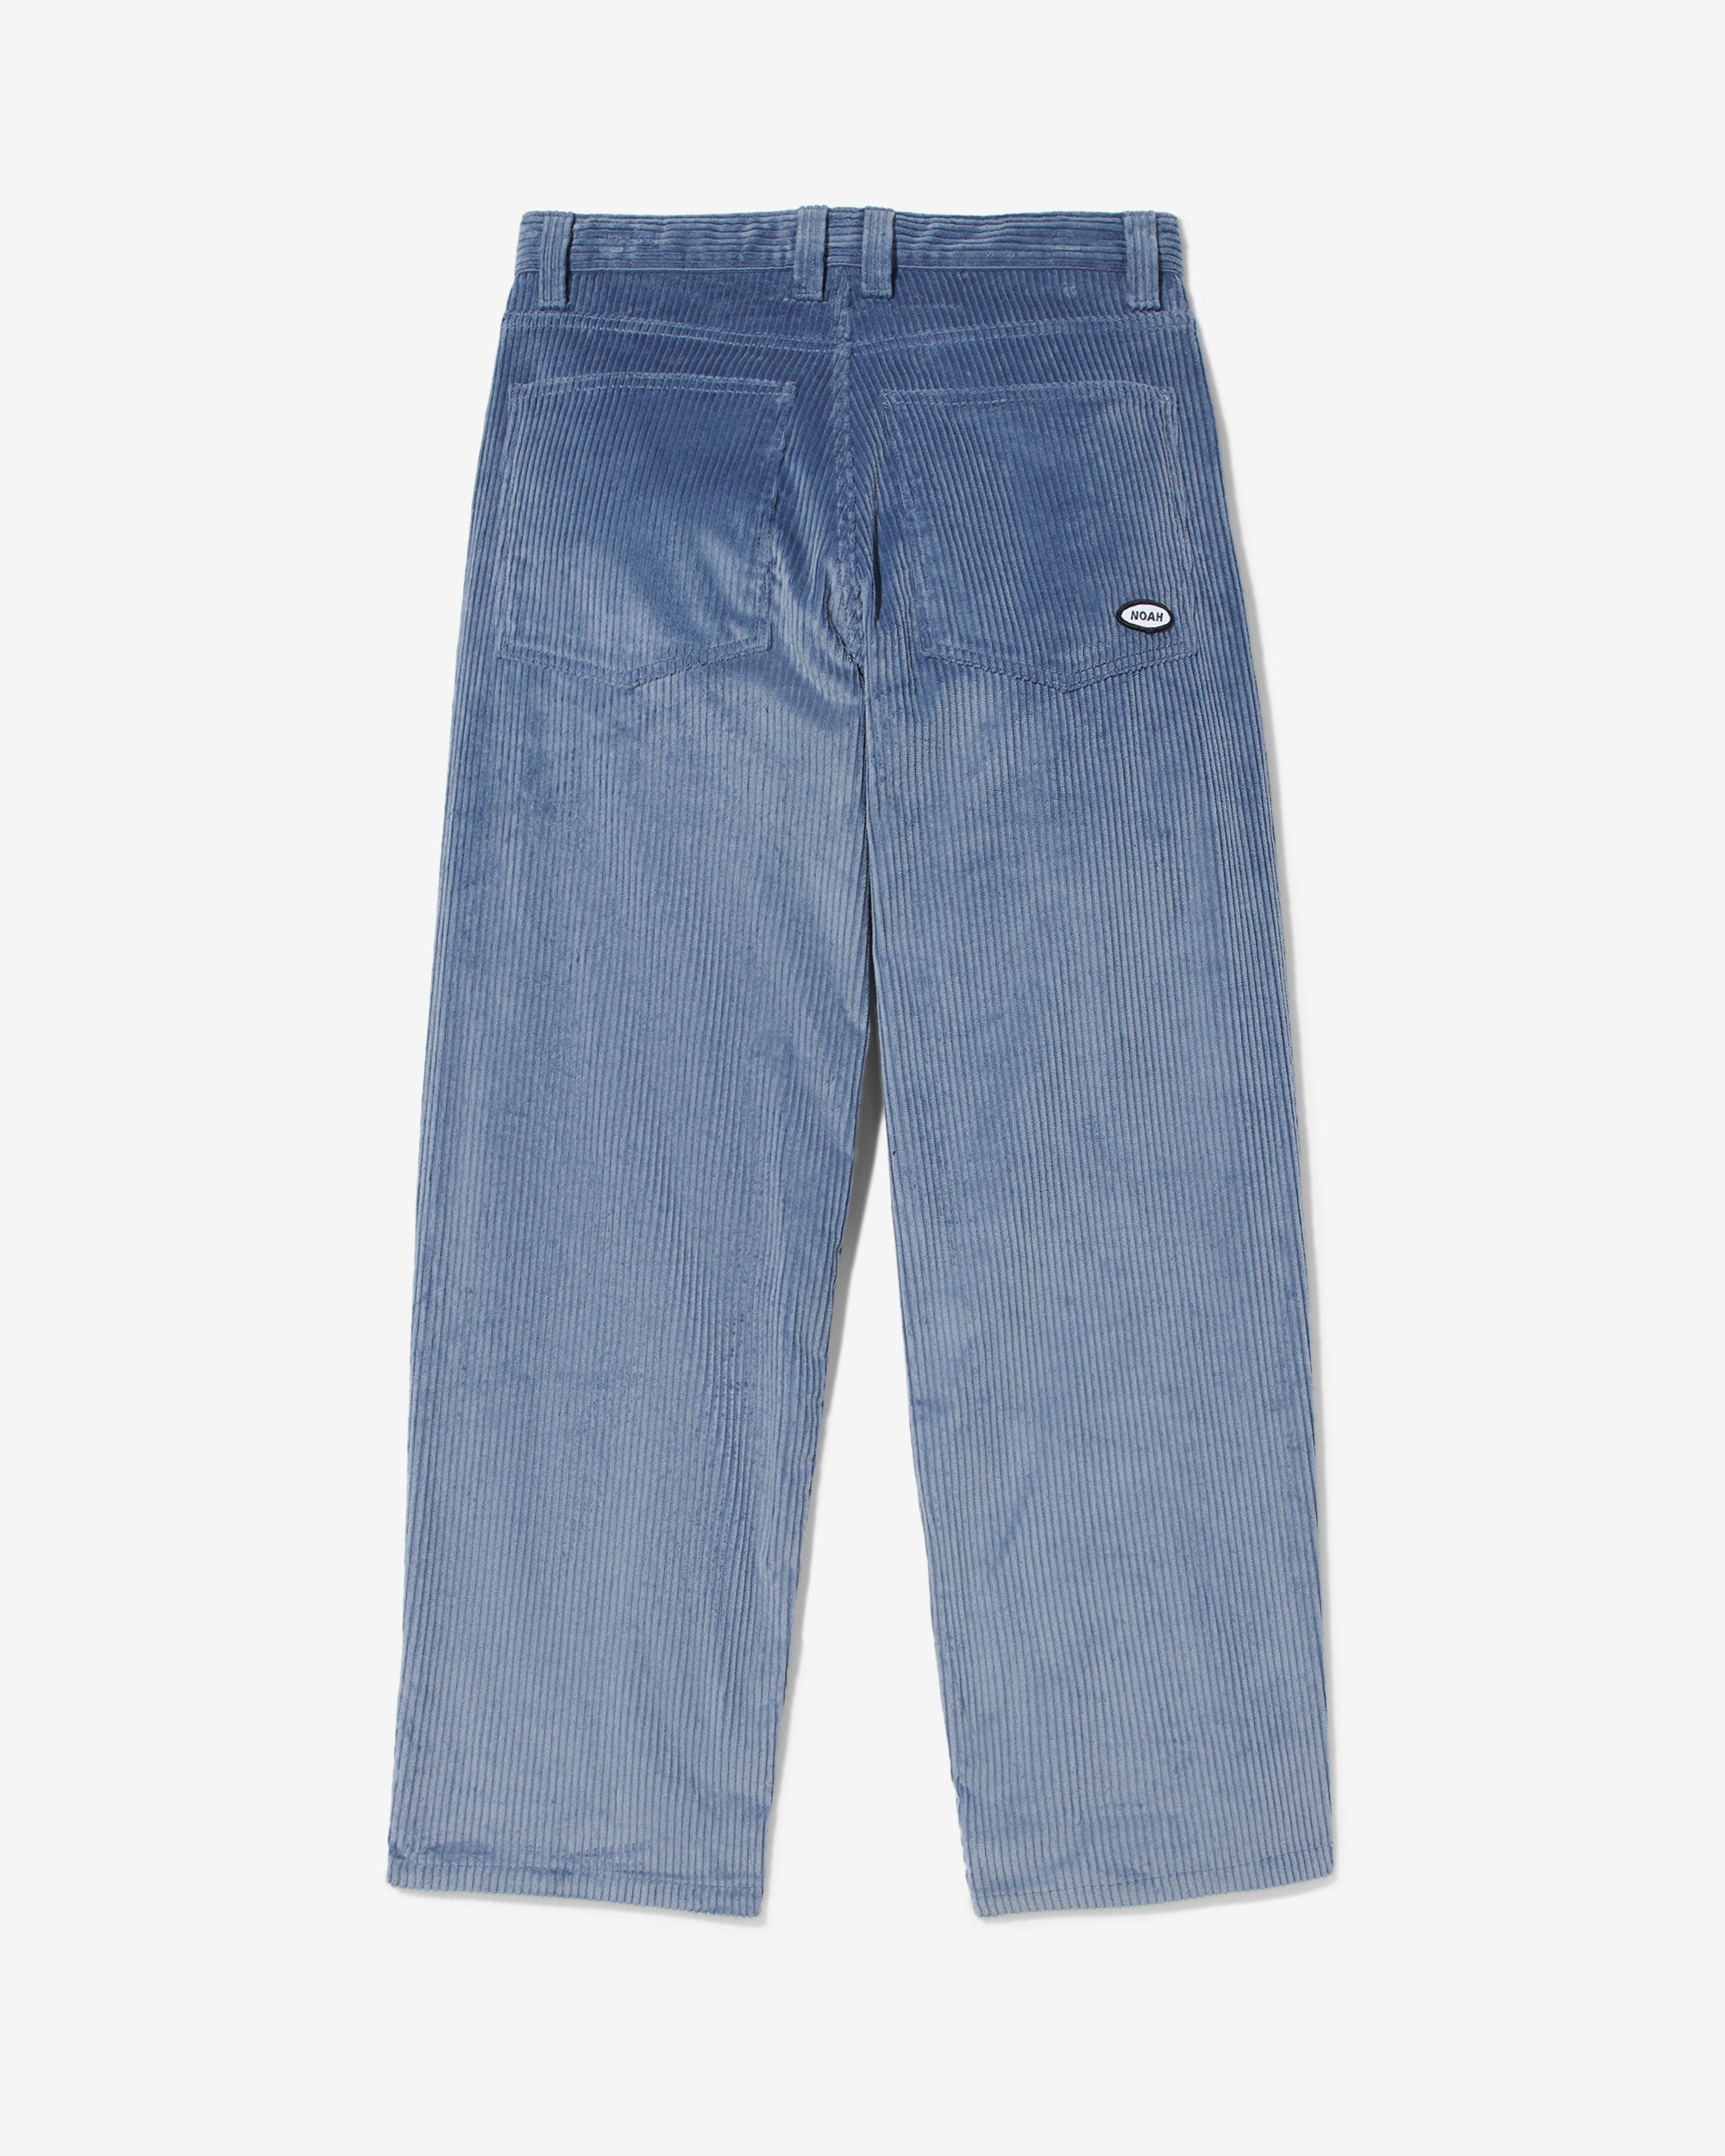 Wide-Wale Corduroy Jeans - Noah